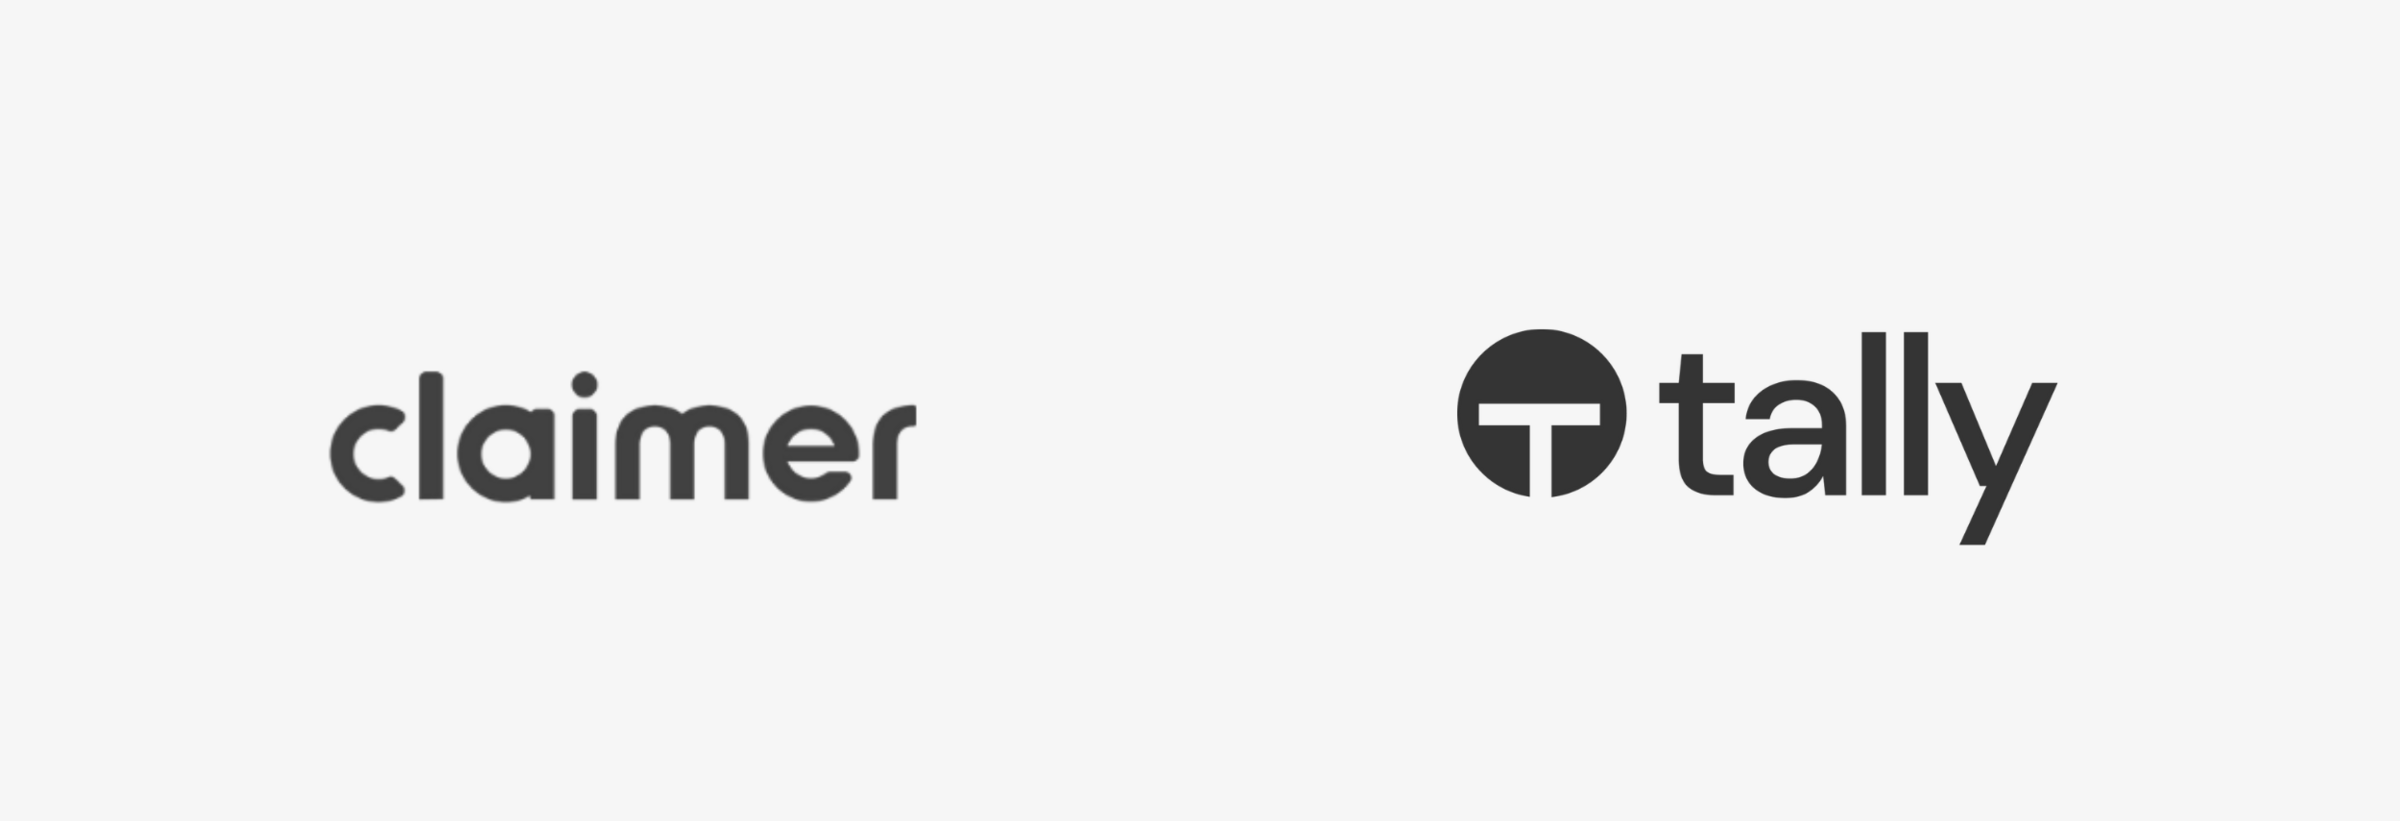 Claimer-logo-next-to-Tally-Market-logo